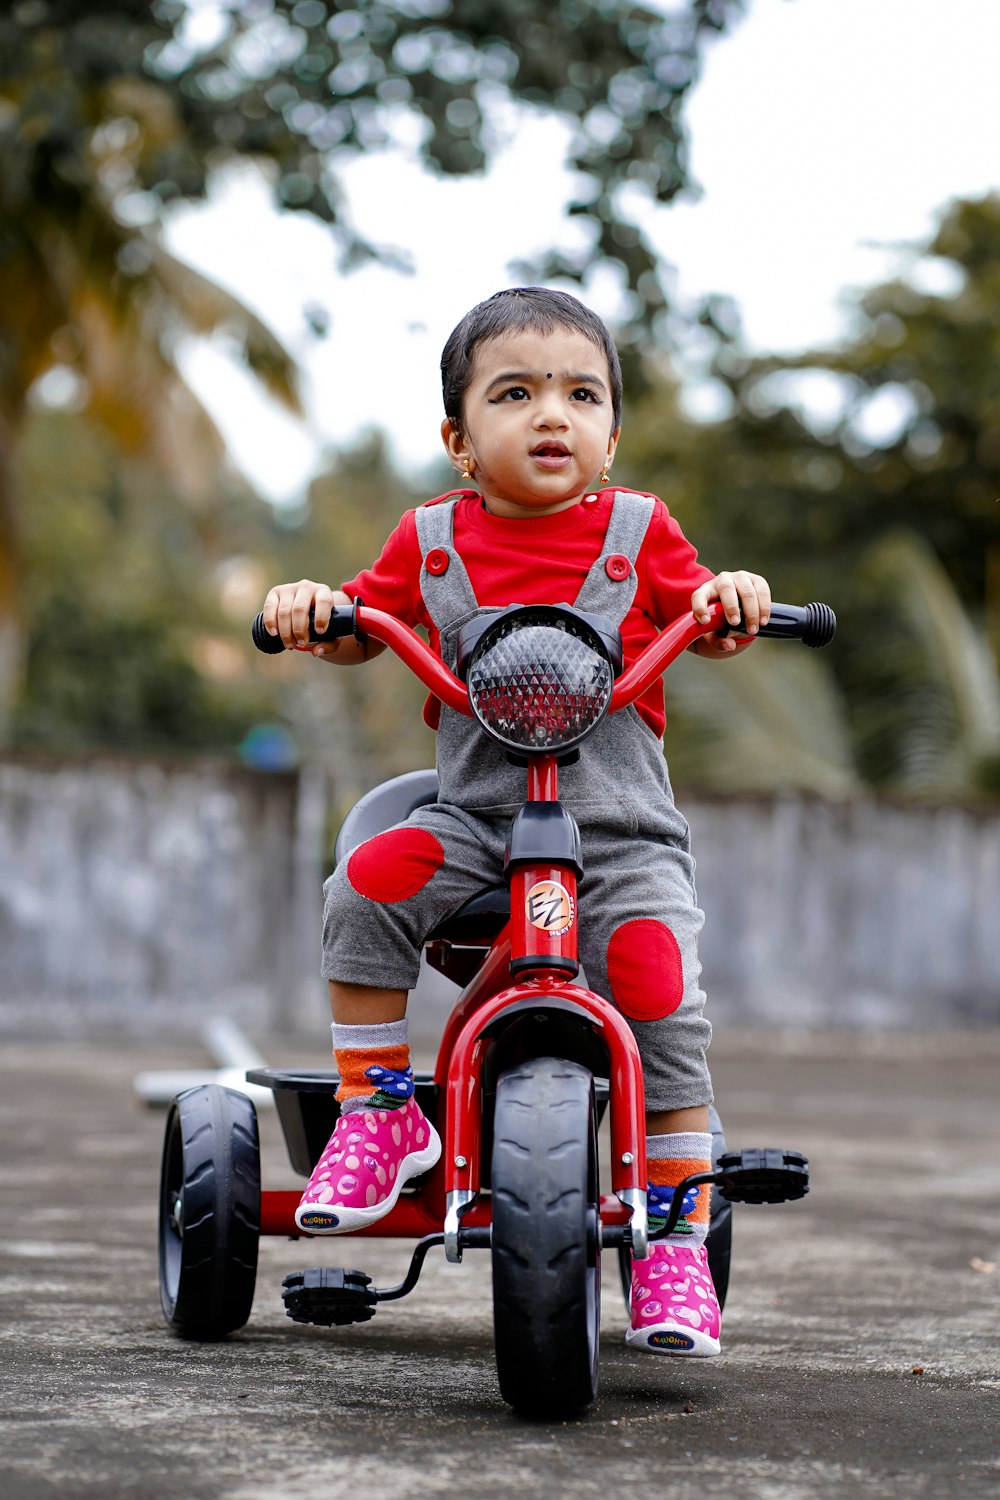 Niño con camisa roja montando bicicleta roja durante el día